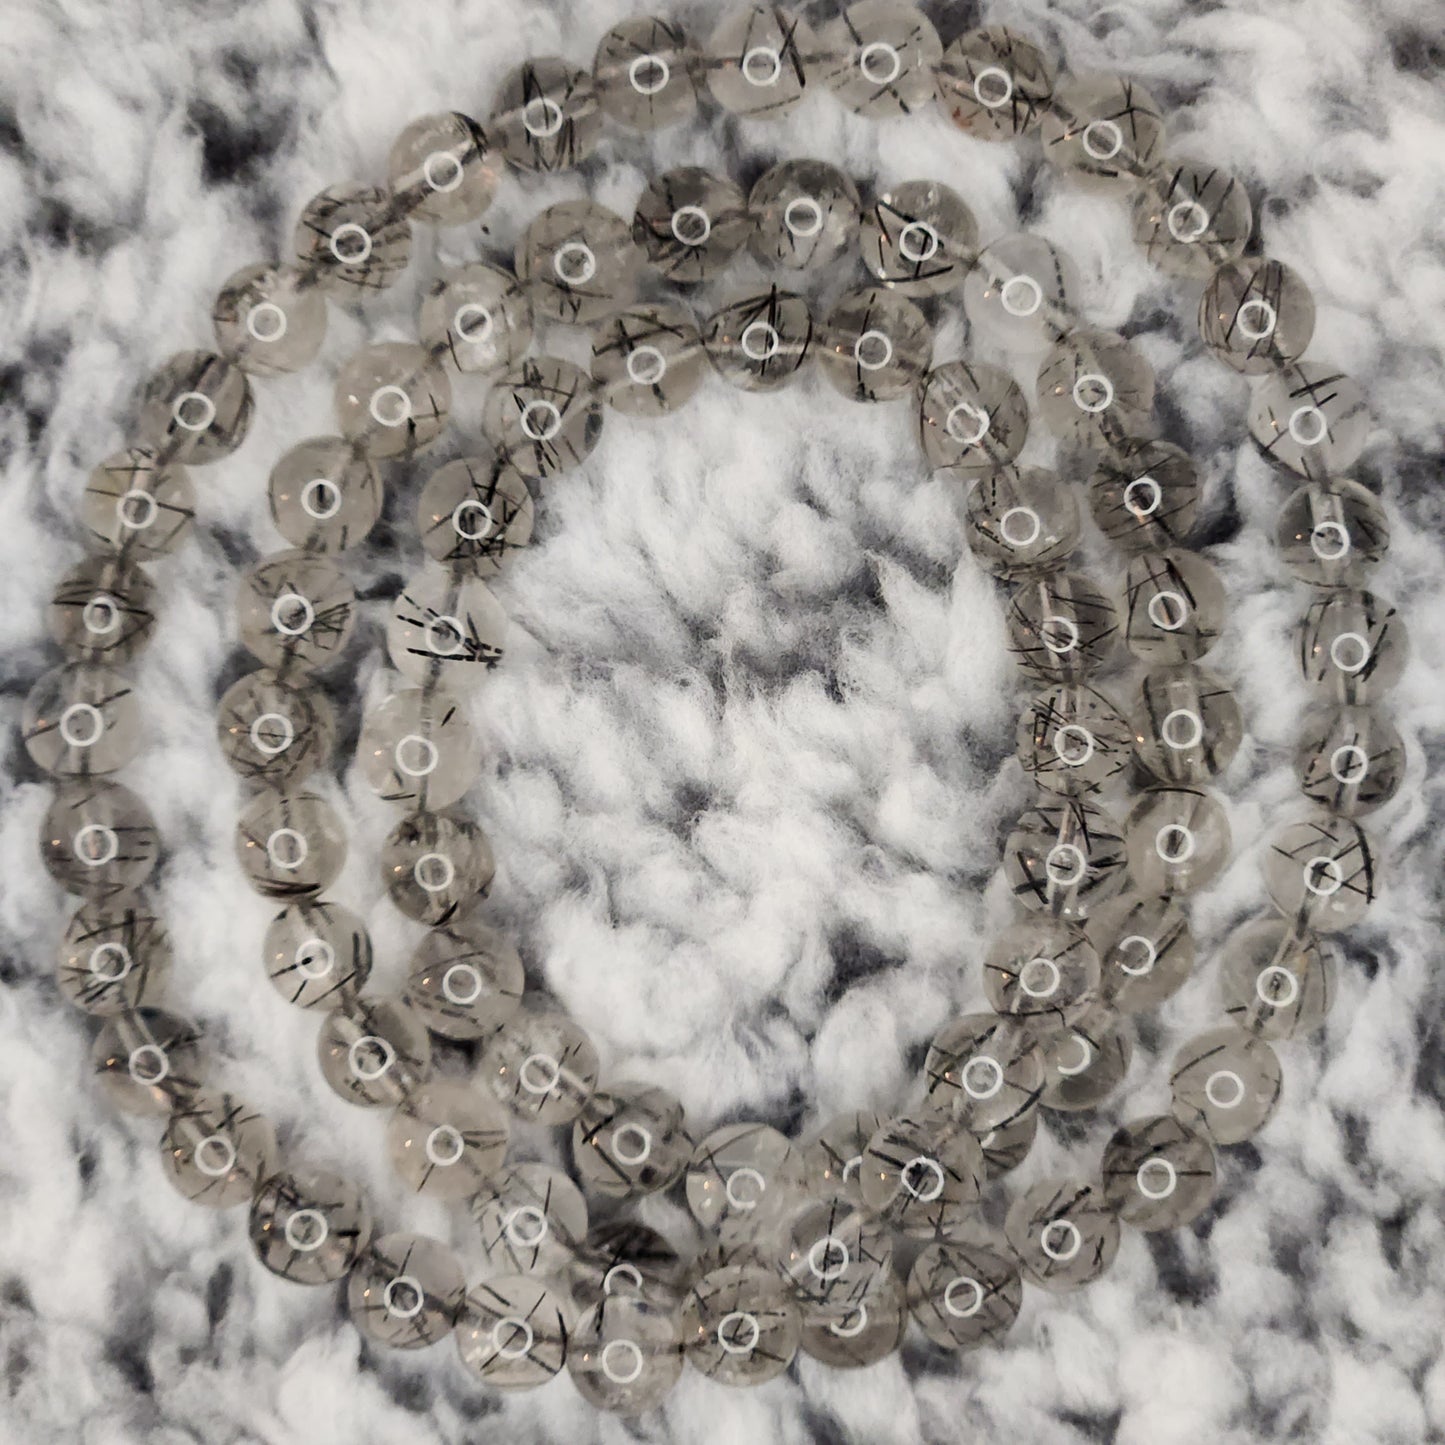 Black Tourmaline in Quartz Bead Necklace